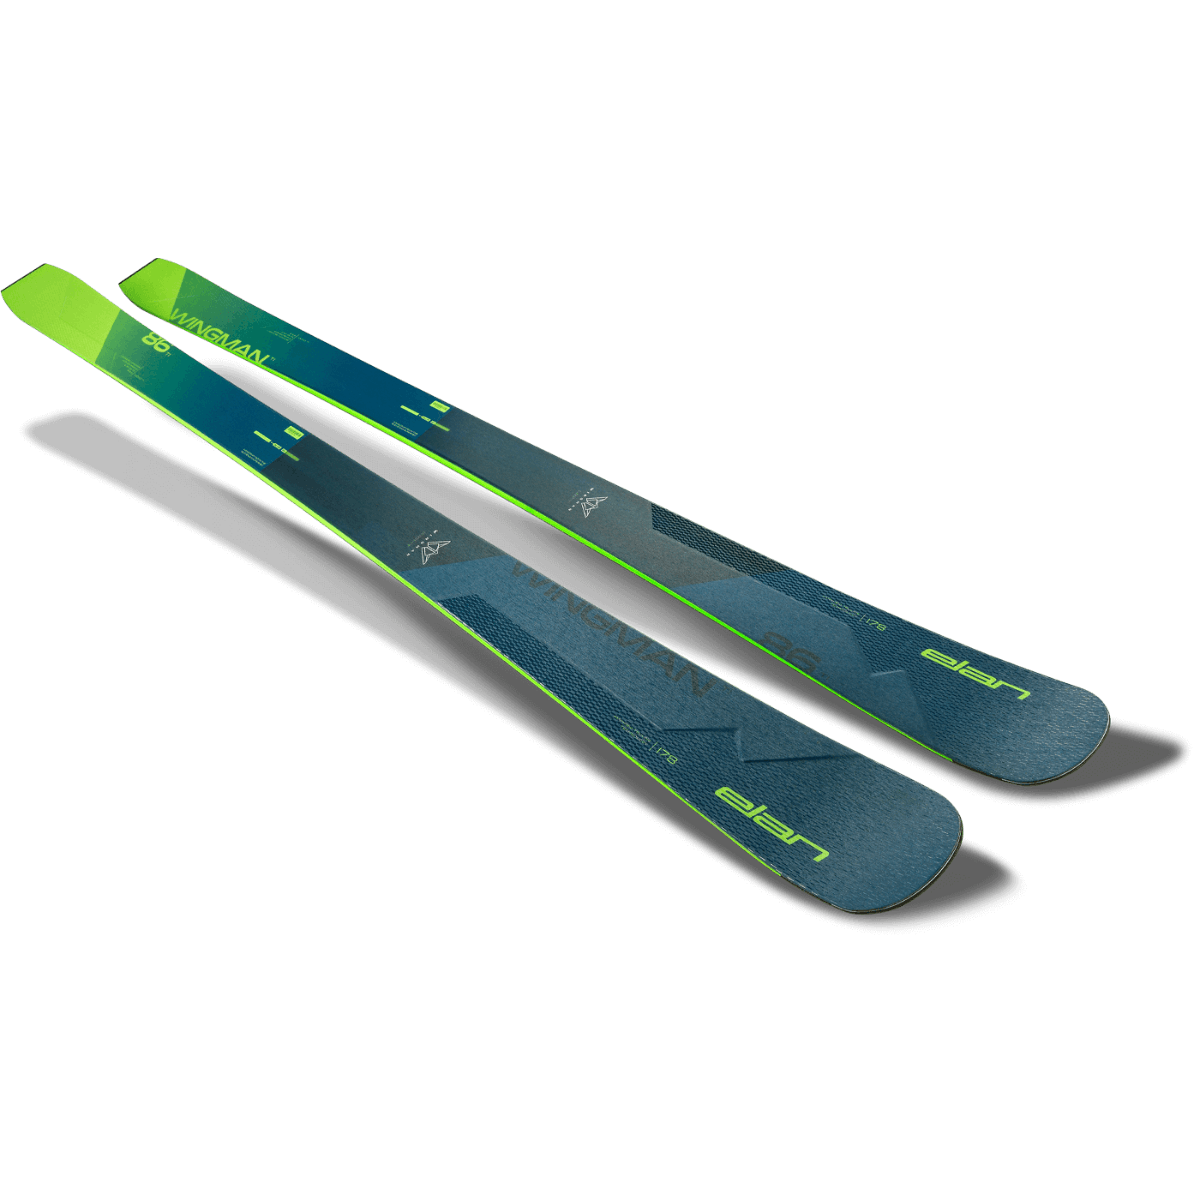 Elan Wingman 86 Ti Skis · 2023 · 172 cm